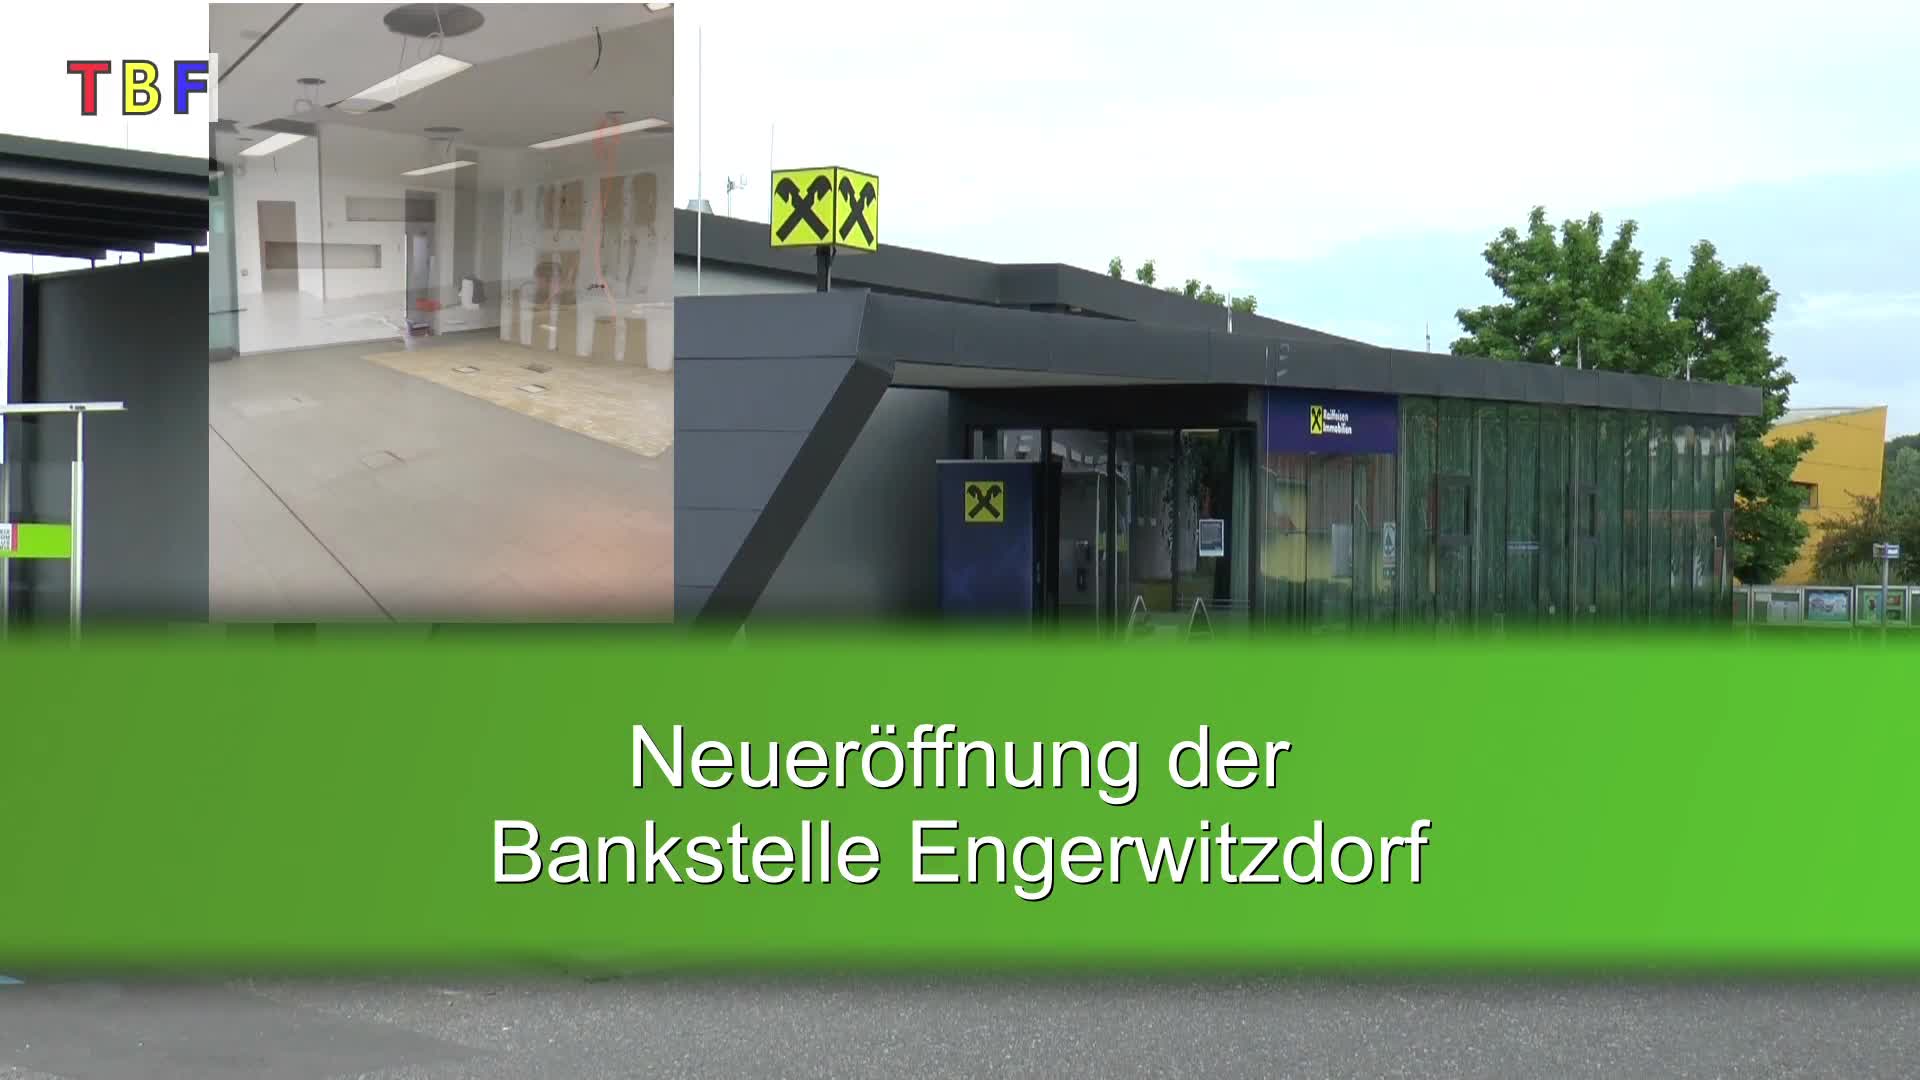 Neueröffnung - Bankstelle Engerwitzdorf